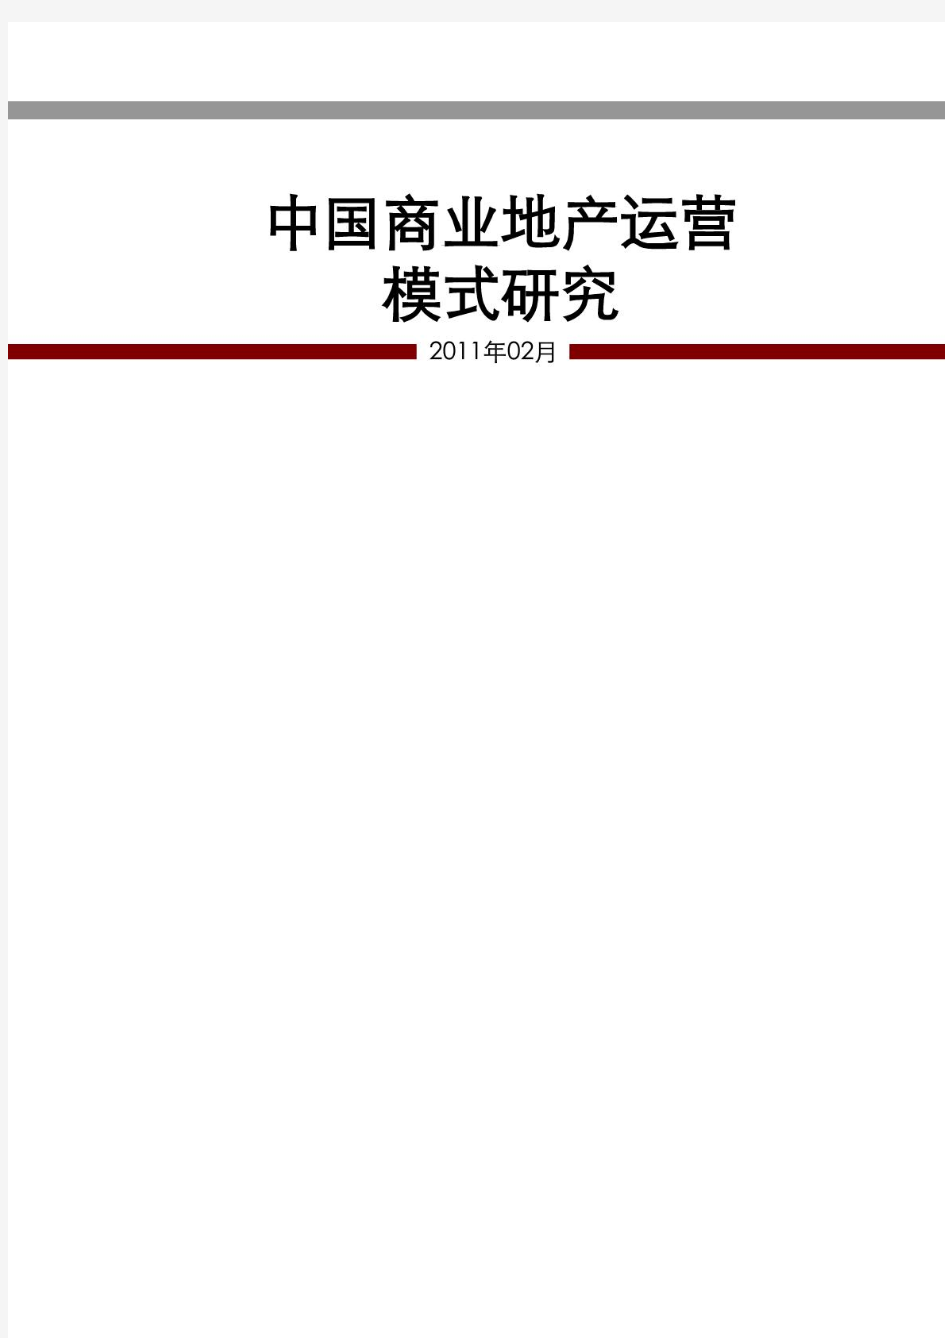 赢商网-2012年中国商业地产各大运营模式分析2145407293